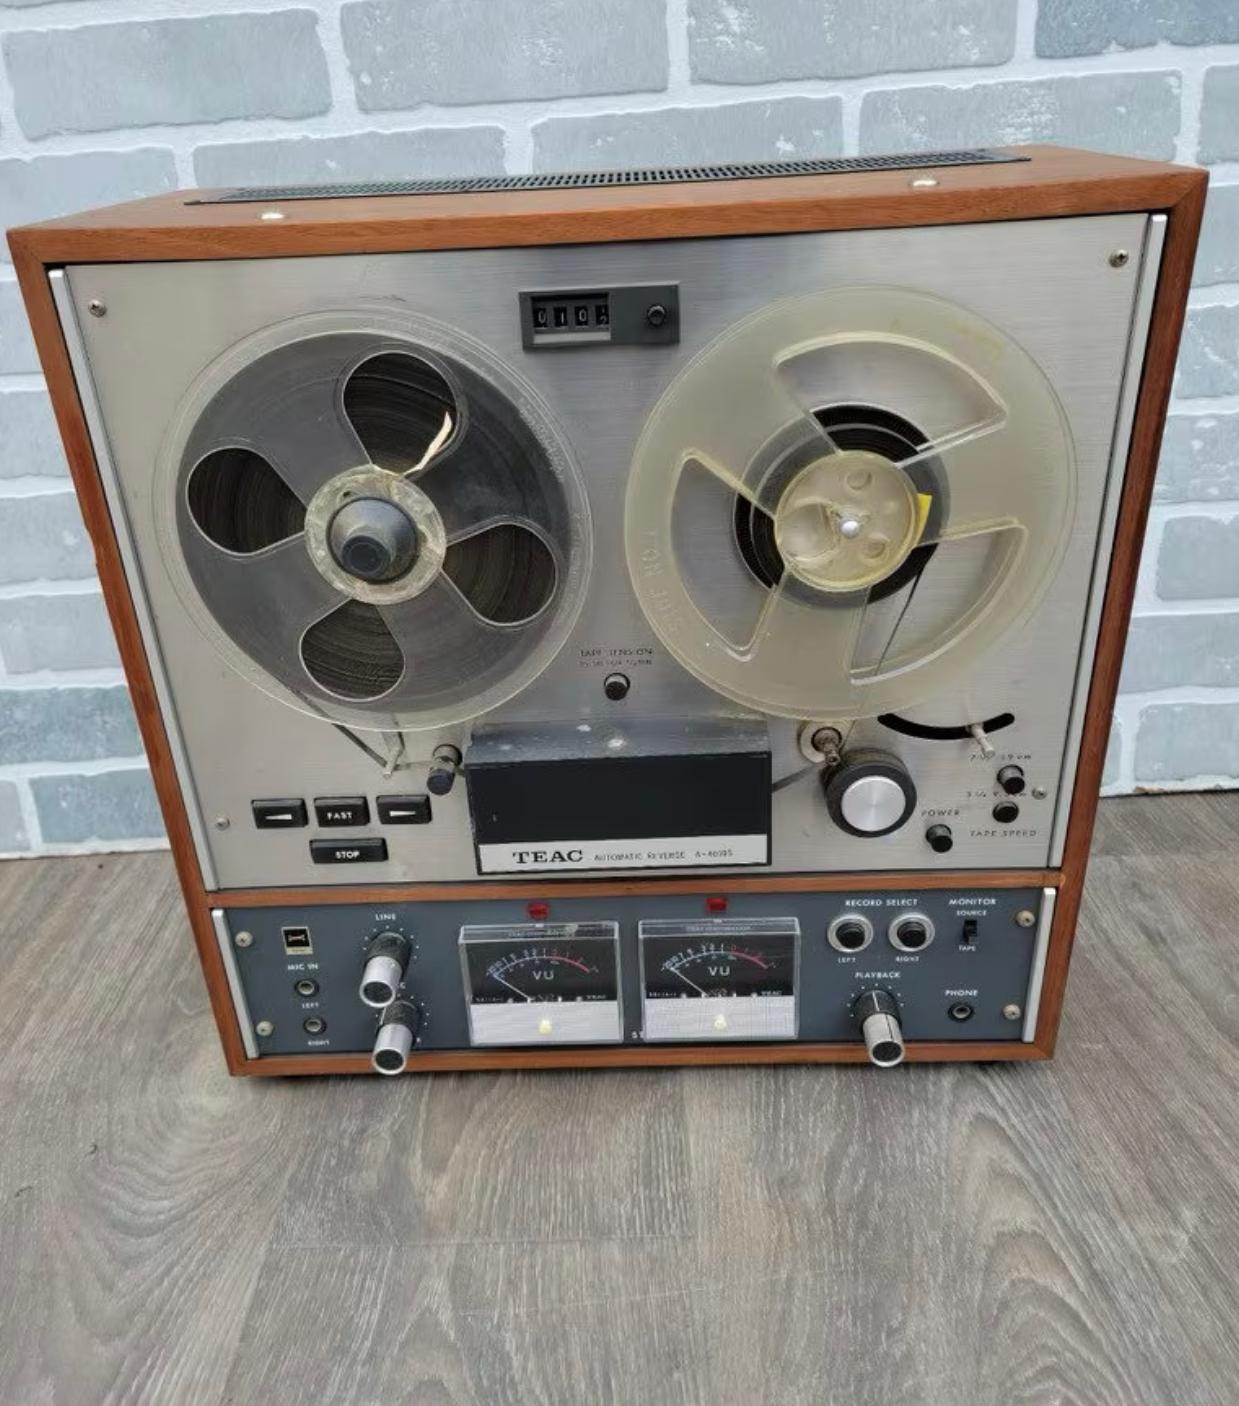 TEAC Tascam Reel To Reel Tape Recorder, Vintage 1966

Dieses antike Tonband wurde in den 1960er Jahren aufgenommen. Es wurde beworben als 